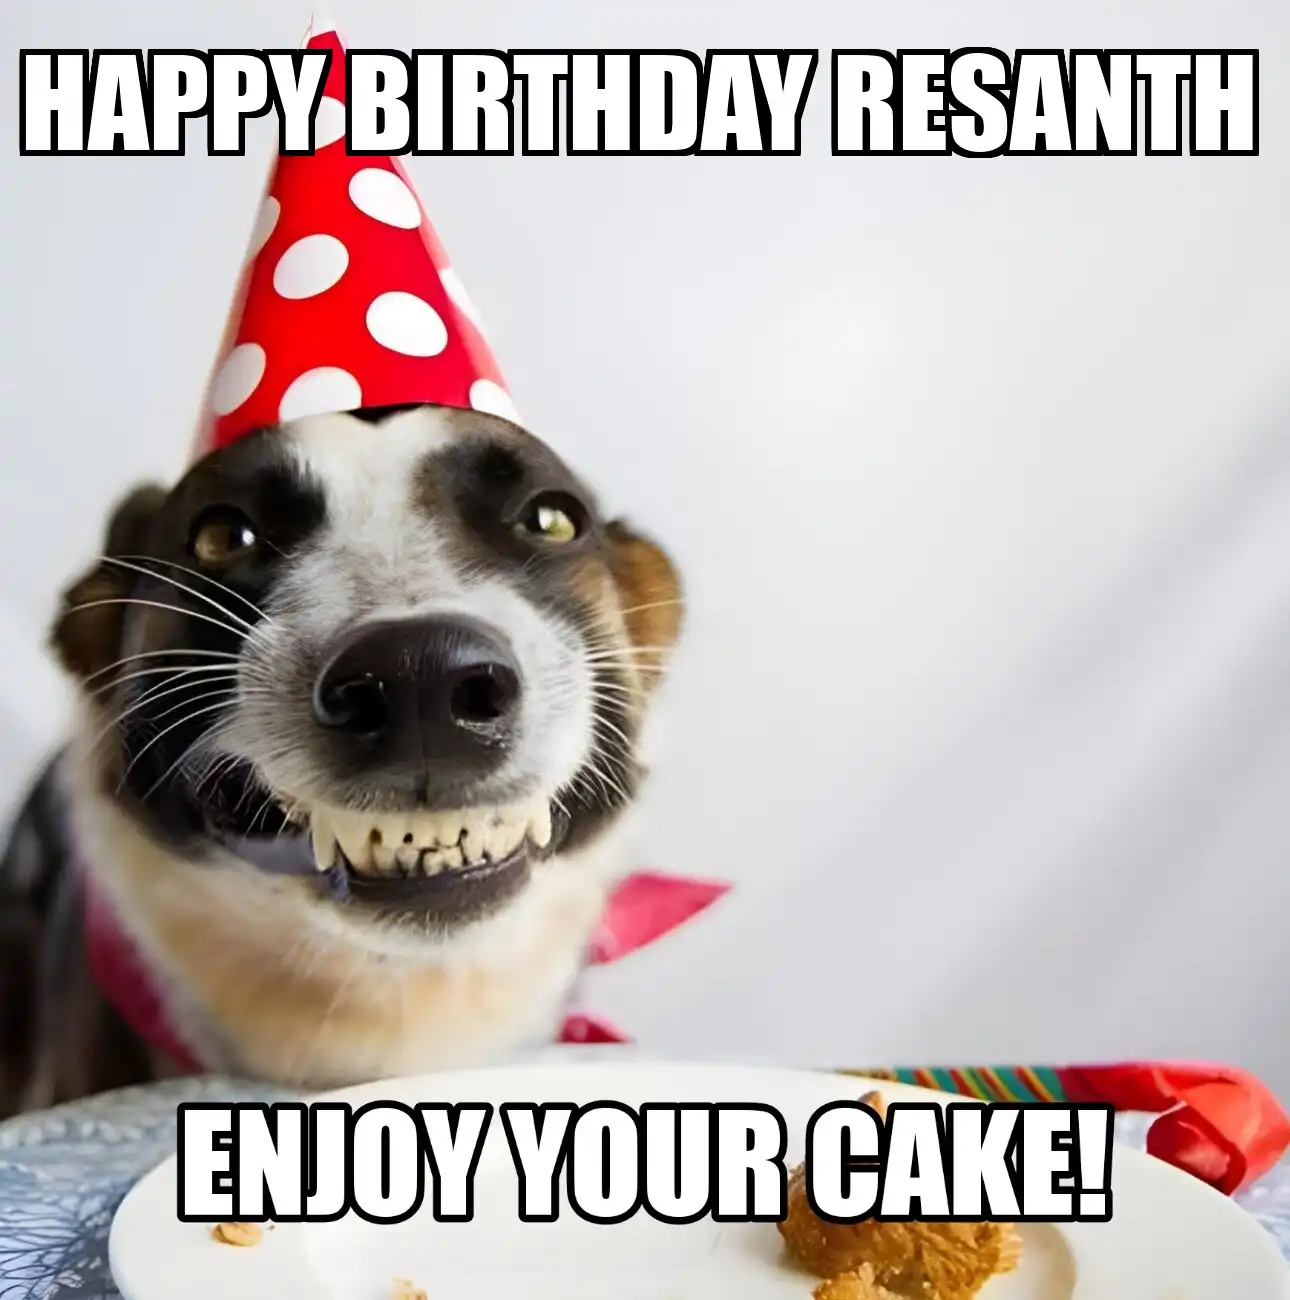 Happy Birthday Resanth Enjoy Your Cake Dog Meme